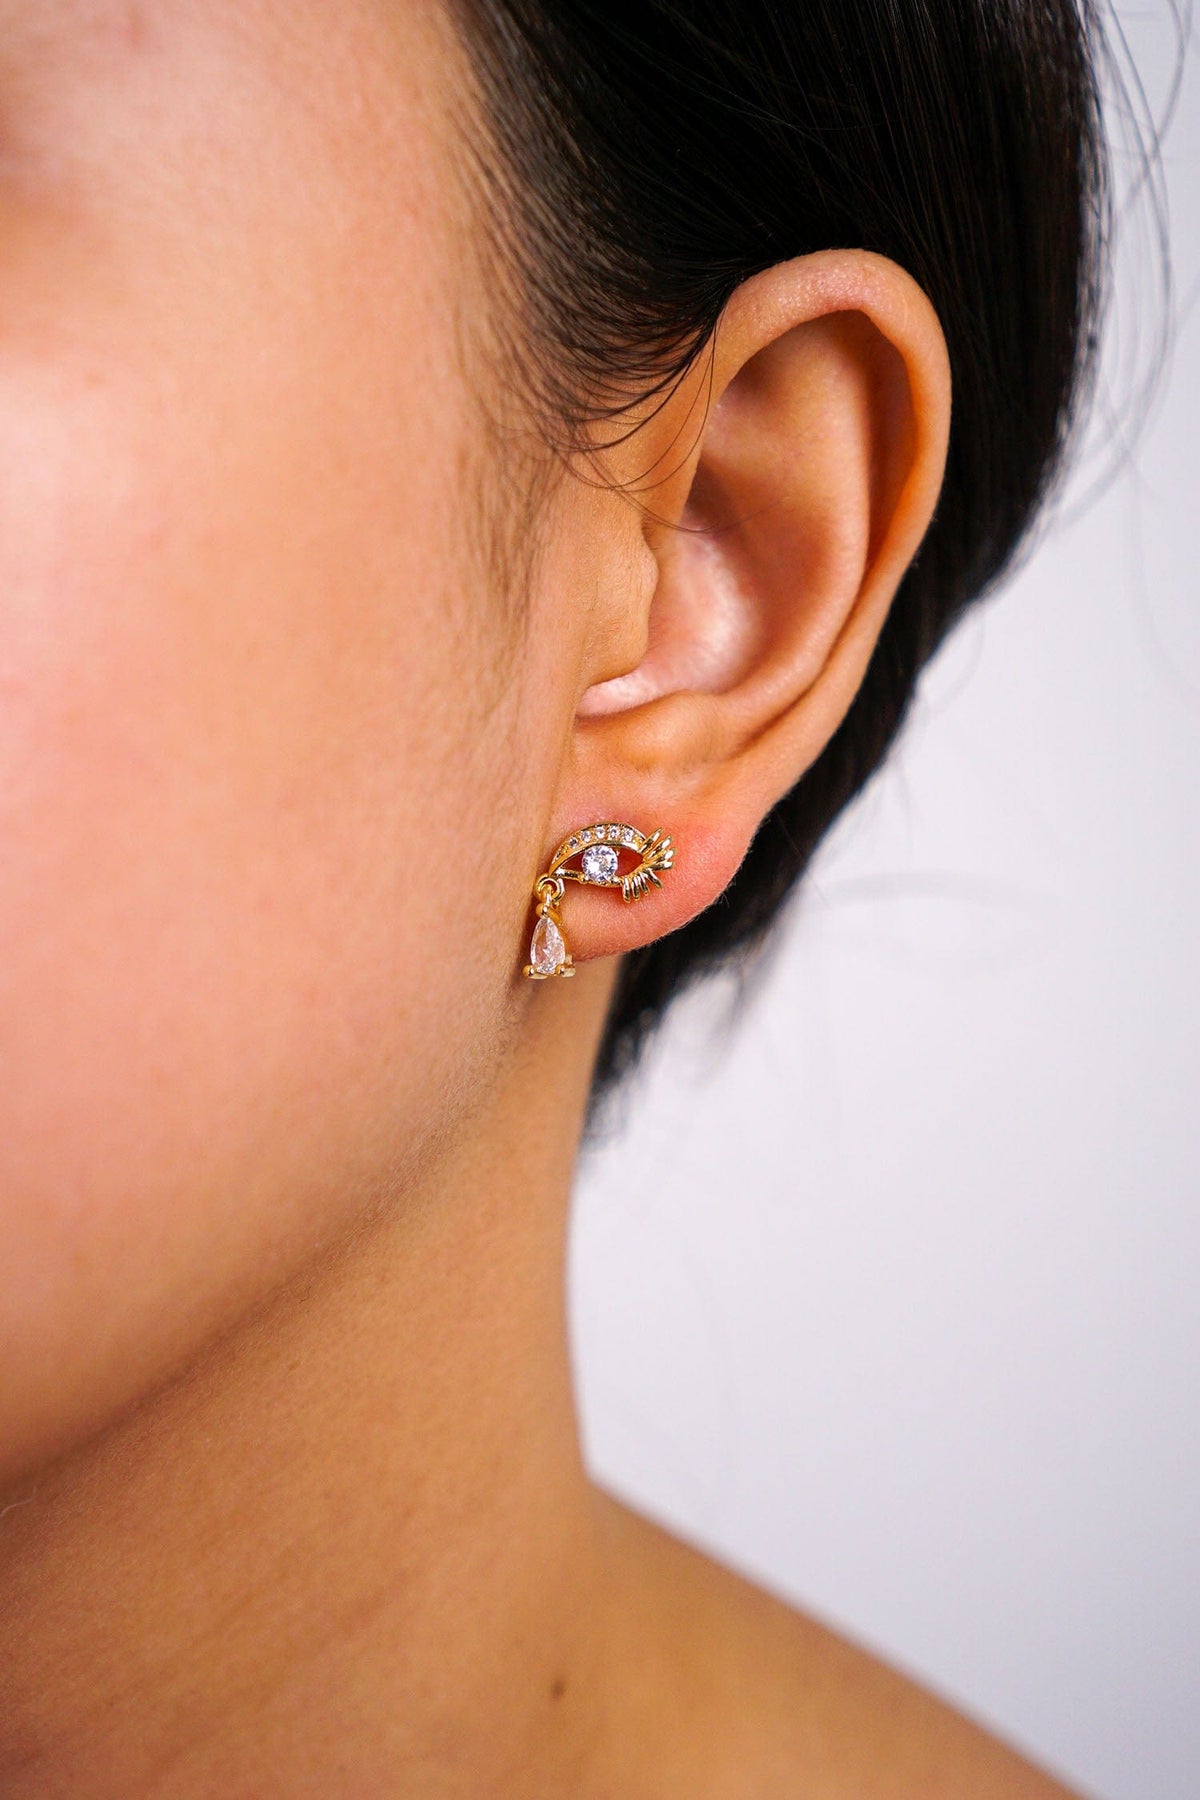 DCD EARRINGS Gold and Diamond Drop Eye Stud Earrings